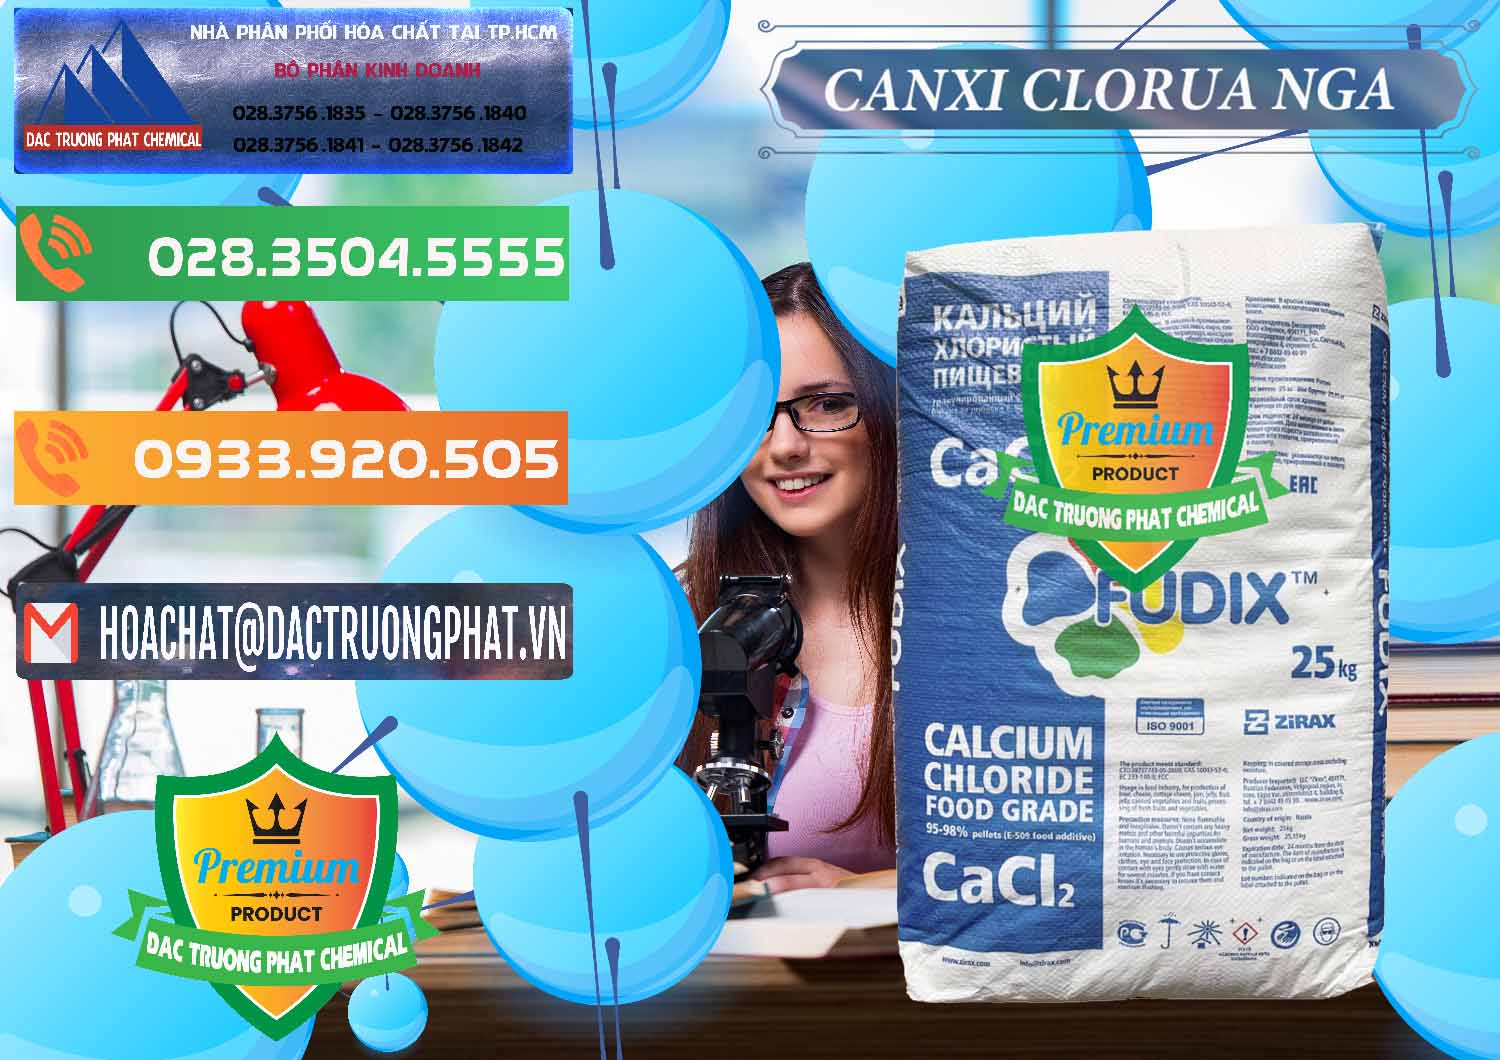 Bán & phân phối CaCl2 – Canxi Clorua Nga Russia - 0430 - Công ty cung cấp và bán hóa chất tại TP.HCM - hoachatxulynuoc.com.vn